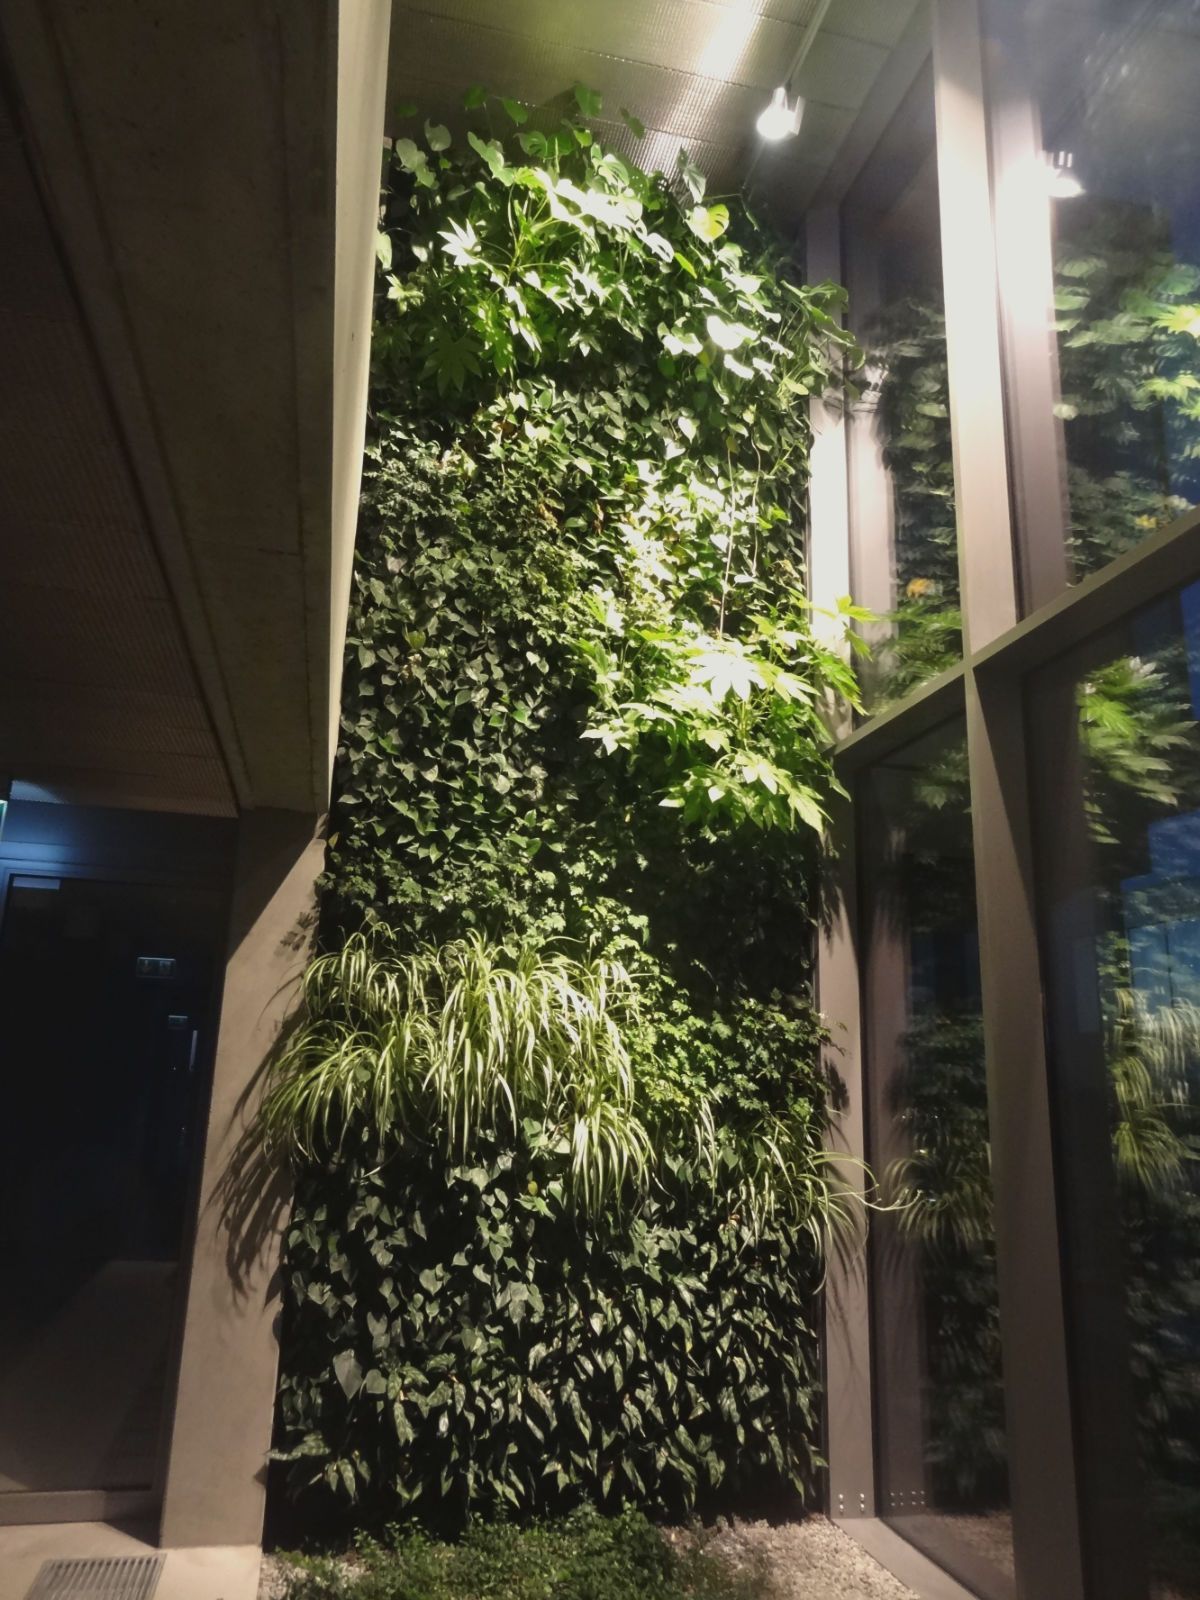 Oxygen Park - zielone ściany doświetlone specjalistycznymi lampami